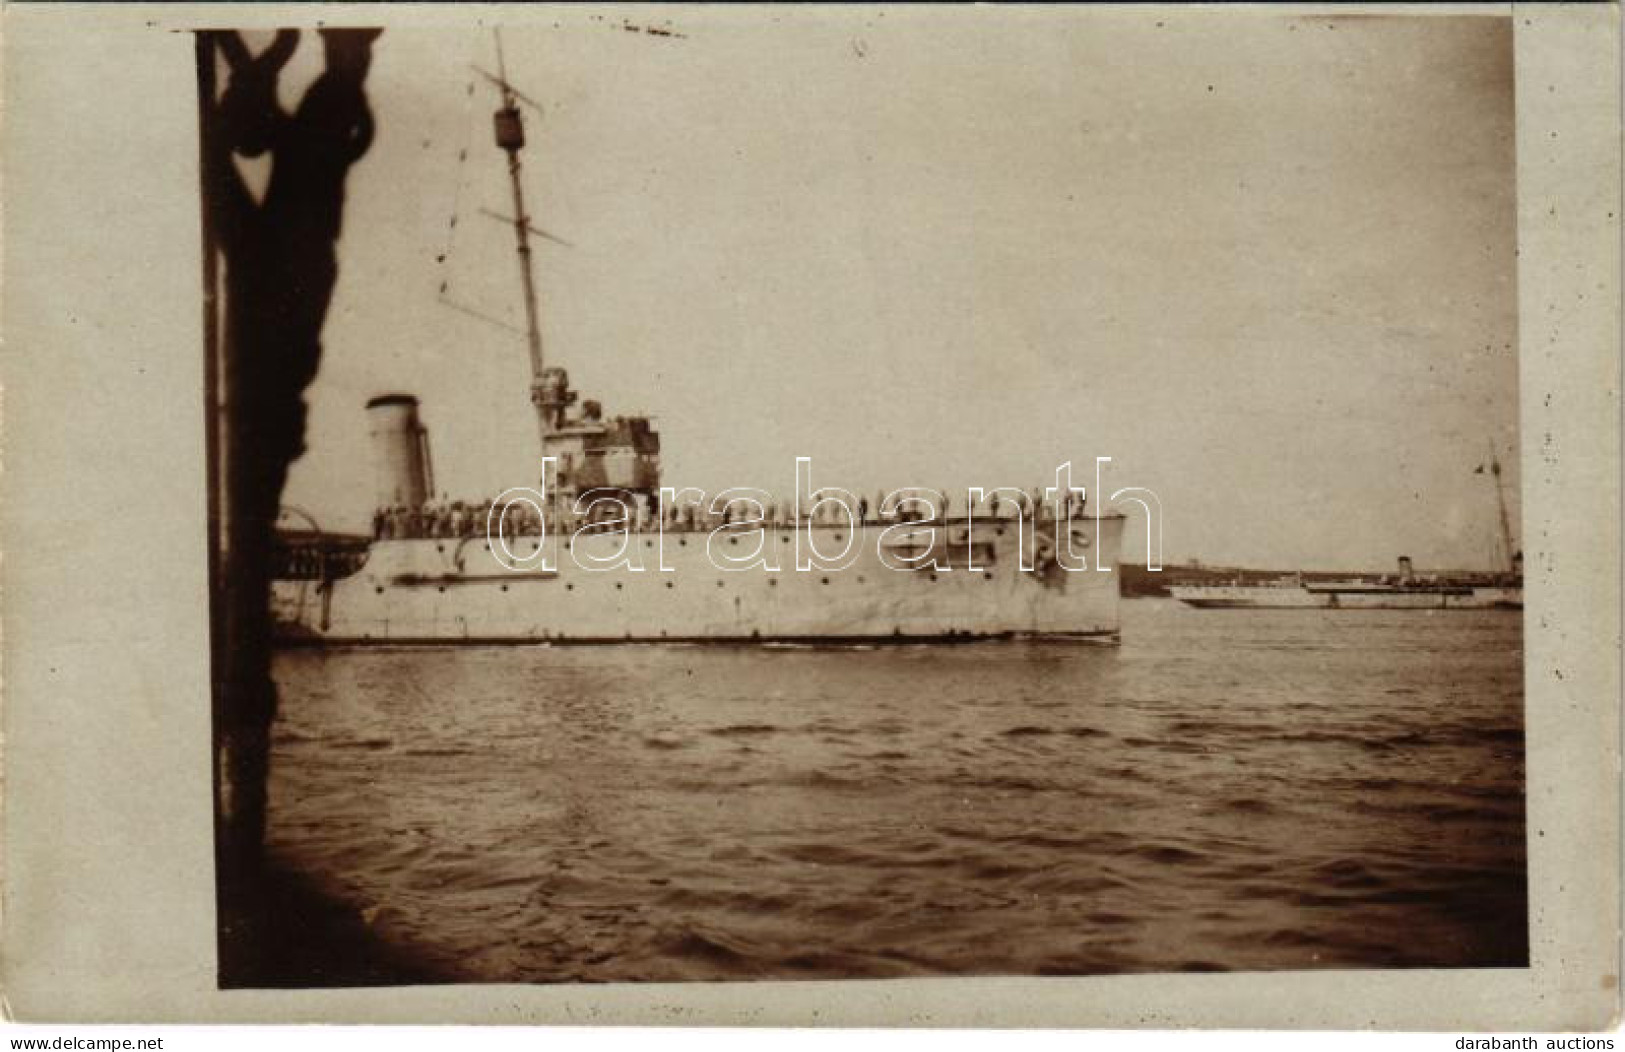 * T2/T3 1917 SMS SAIDA Osztrák-Magyar Haditengerészet Novara-osztályú Gyorscirkálója Az Otranttó-i Csata Után / Rapidkre - Ohne Zuordnung